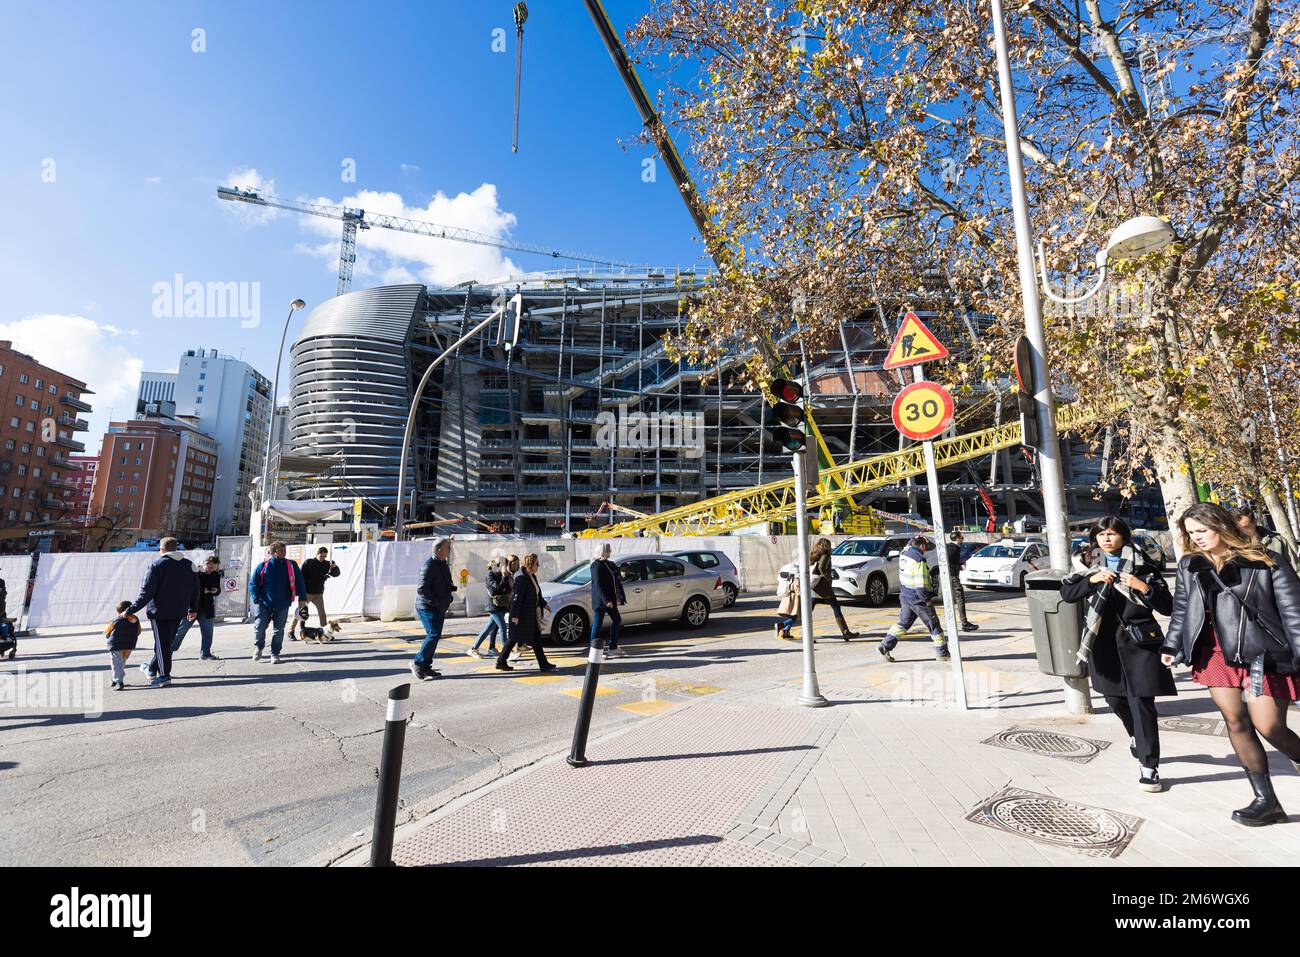 Madrid, España - 04 de enero de 2023: Exterior del Santiago Bernabéu, estadio de fútbol del Real Madrid, durante obras de renovación. Foto de stock